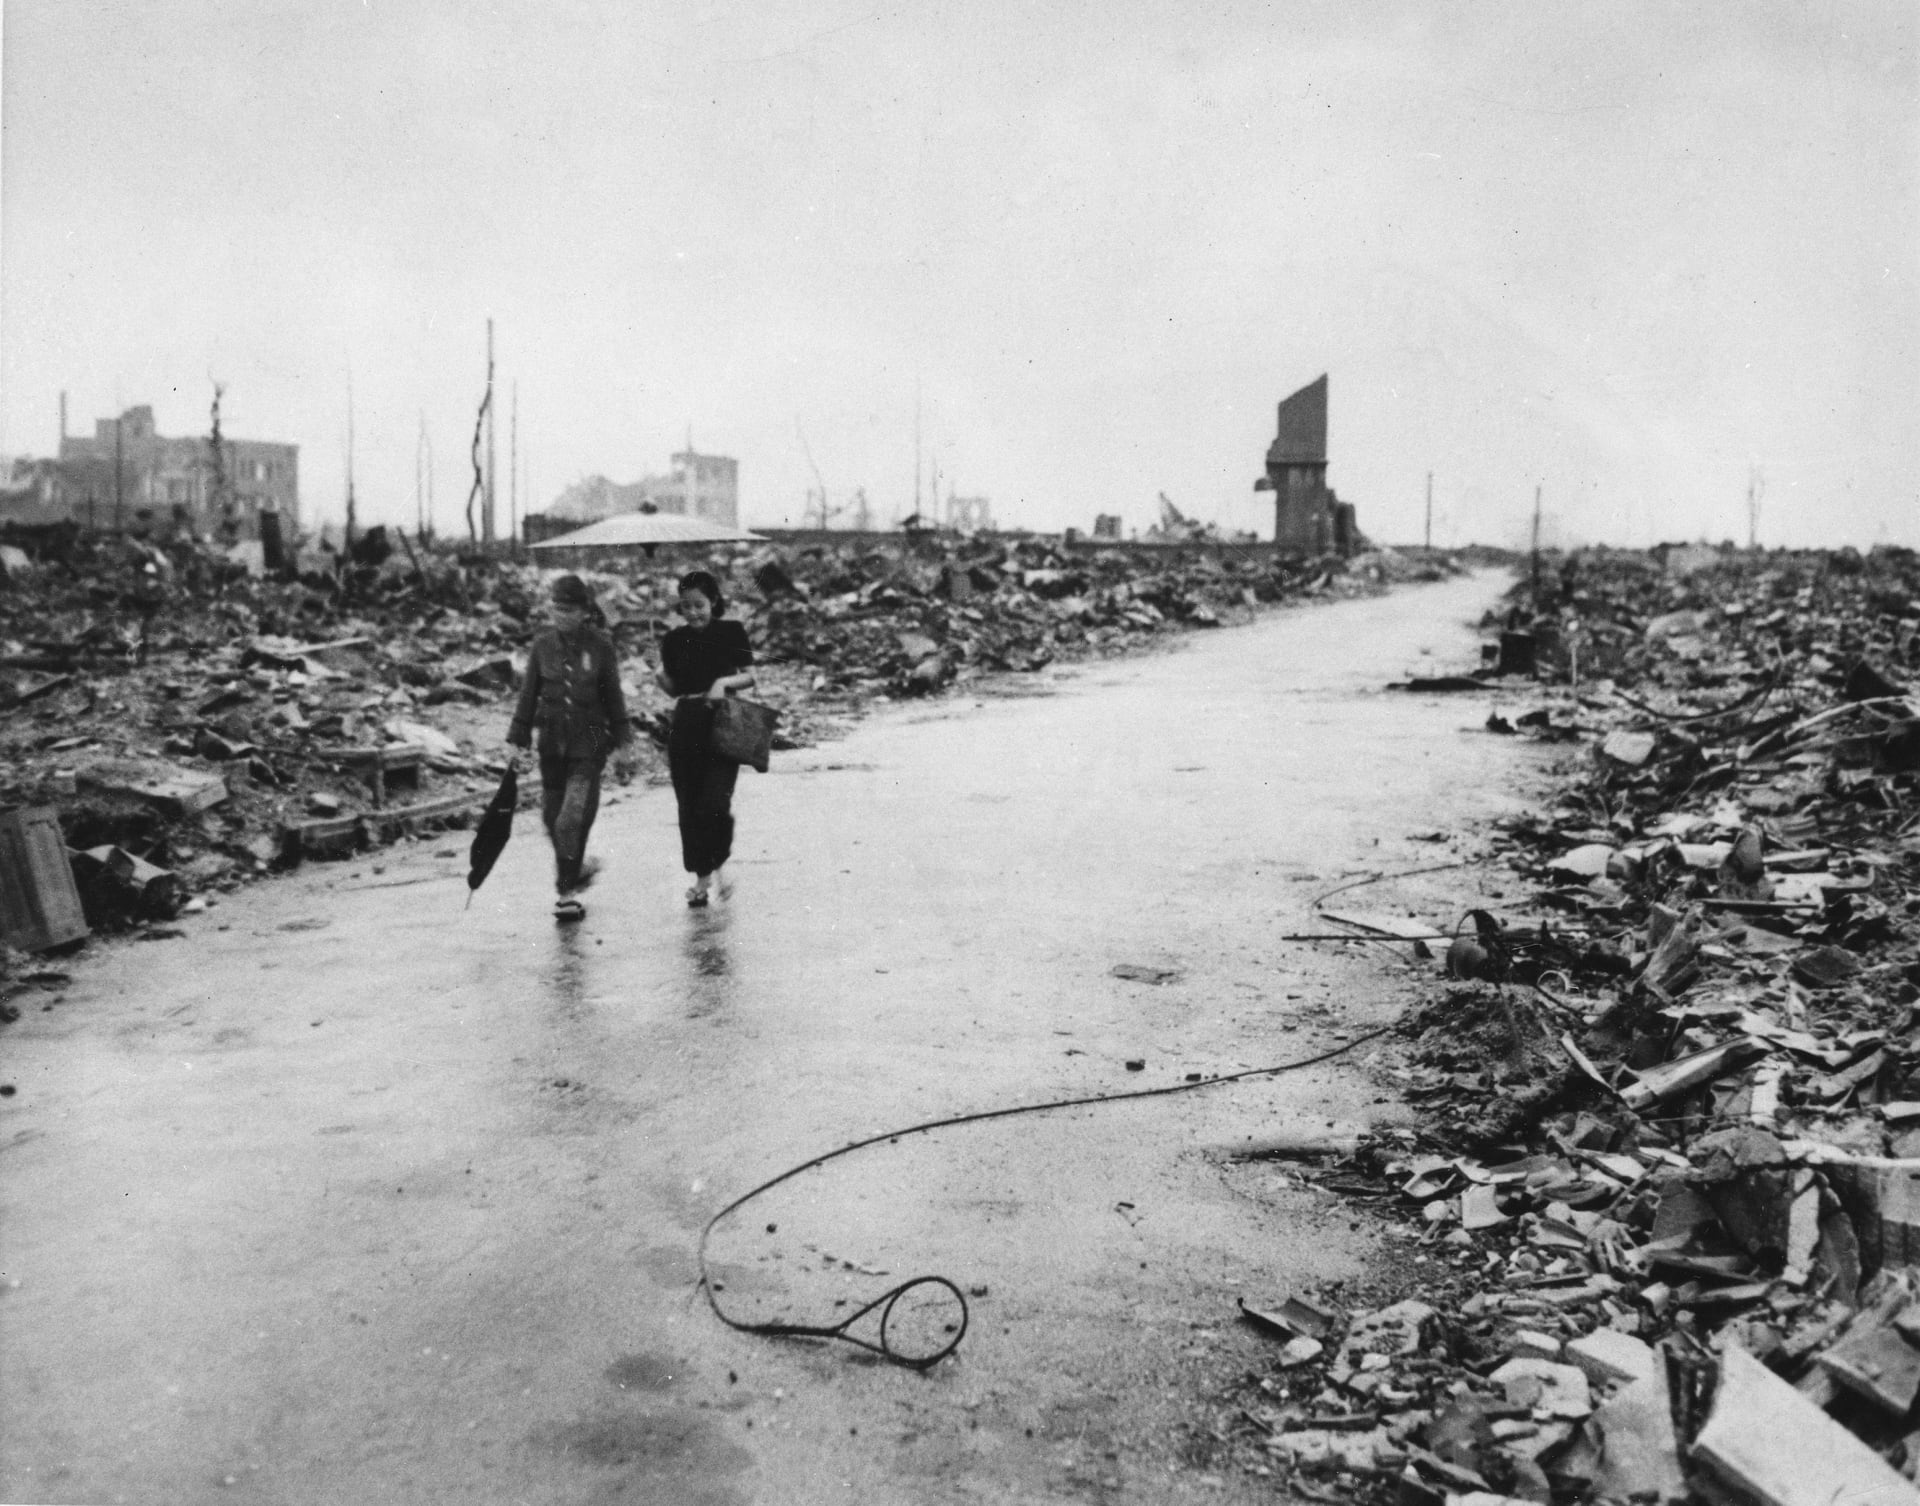 Snímek spojeneckých pozorovatelů ukazuje, že po výbuchu atomové bomby nezůstal kámen na kameni.